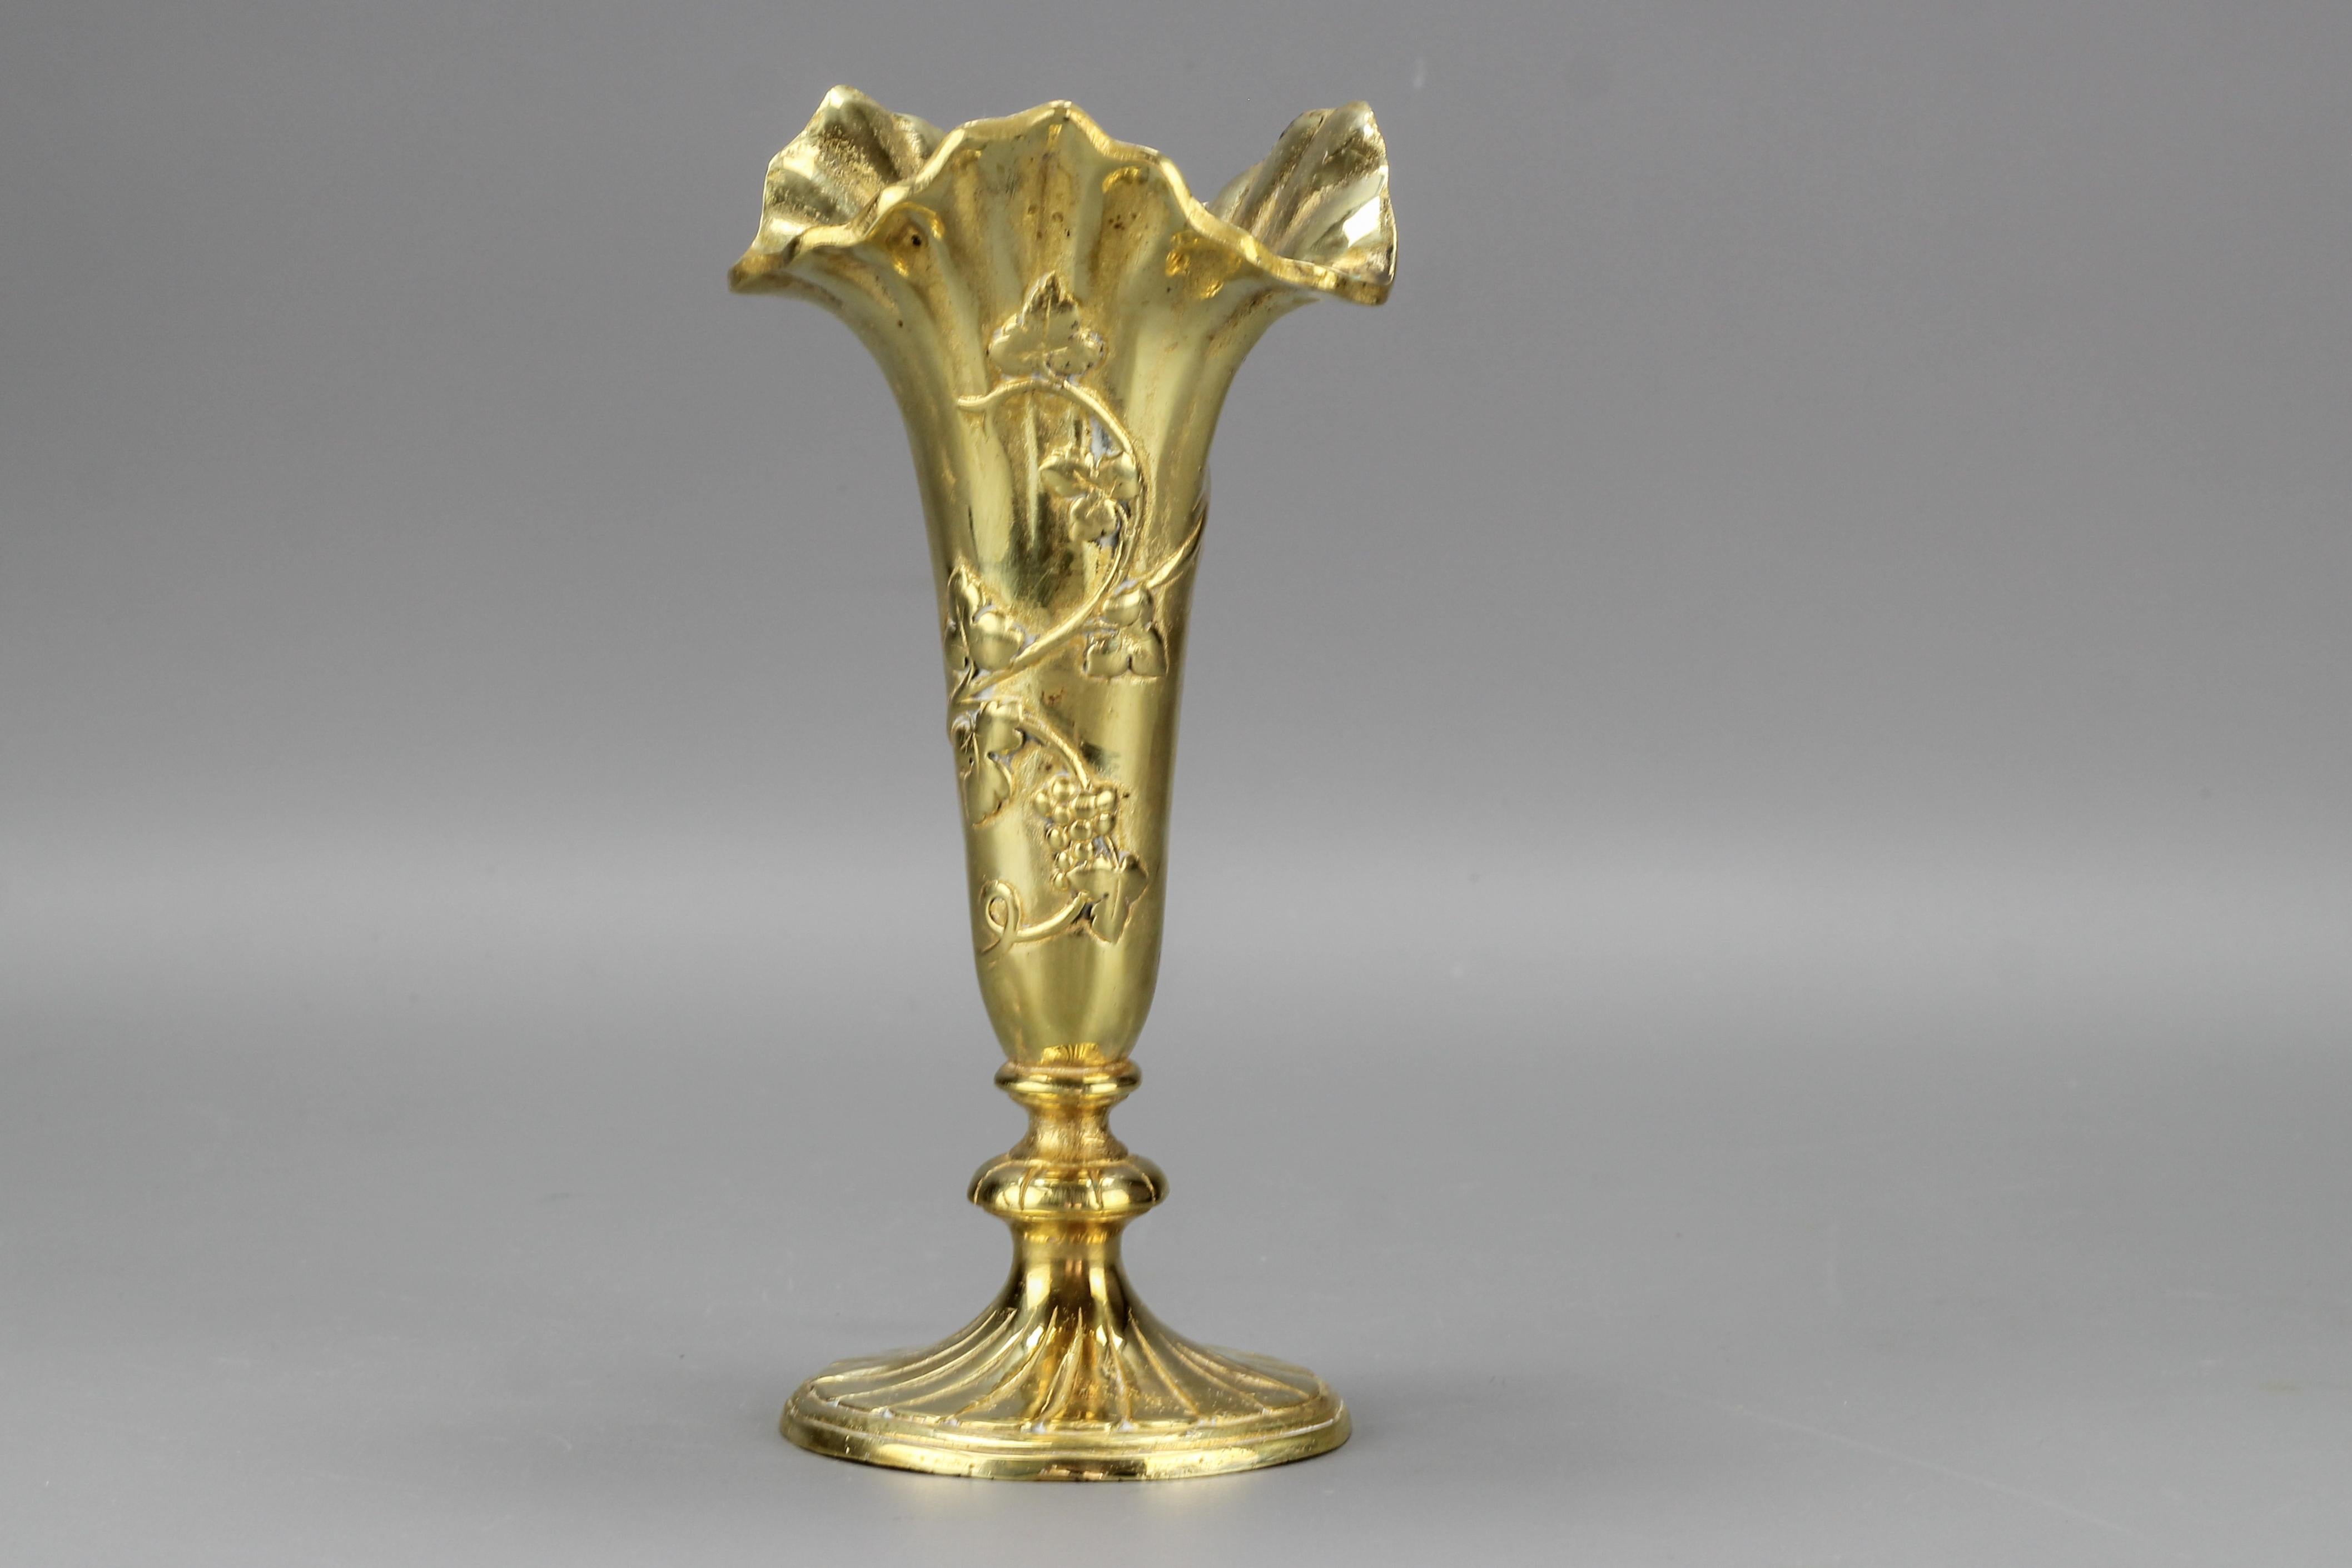 Vase en bronze de style rococo français avec motif de vignes, vers 1920.
Un petit et adorable vase en bronze magnifiquement façonné avec des motifs de vigne, France, vers les années 1920.
En bon état avec quelques signes de vieillissement et